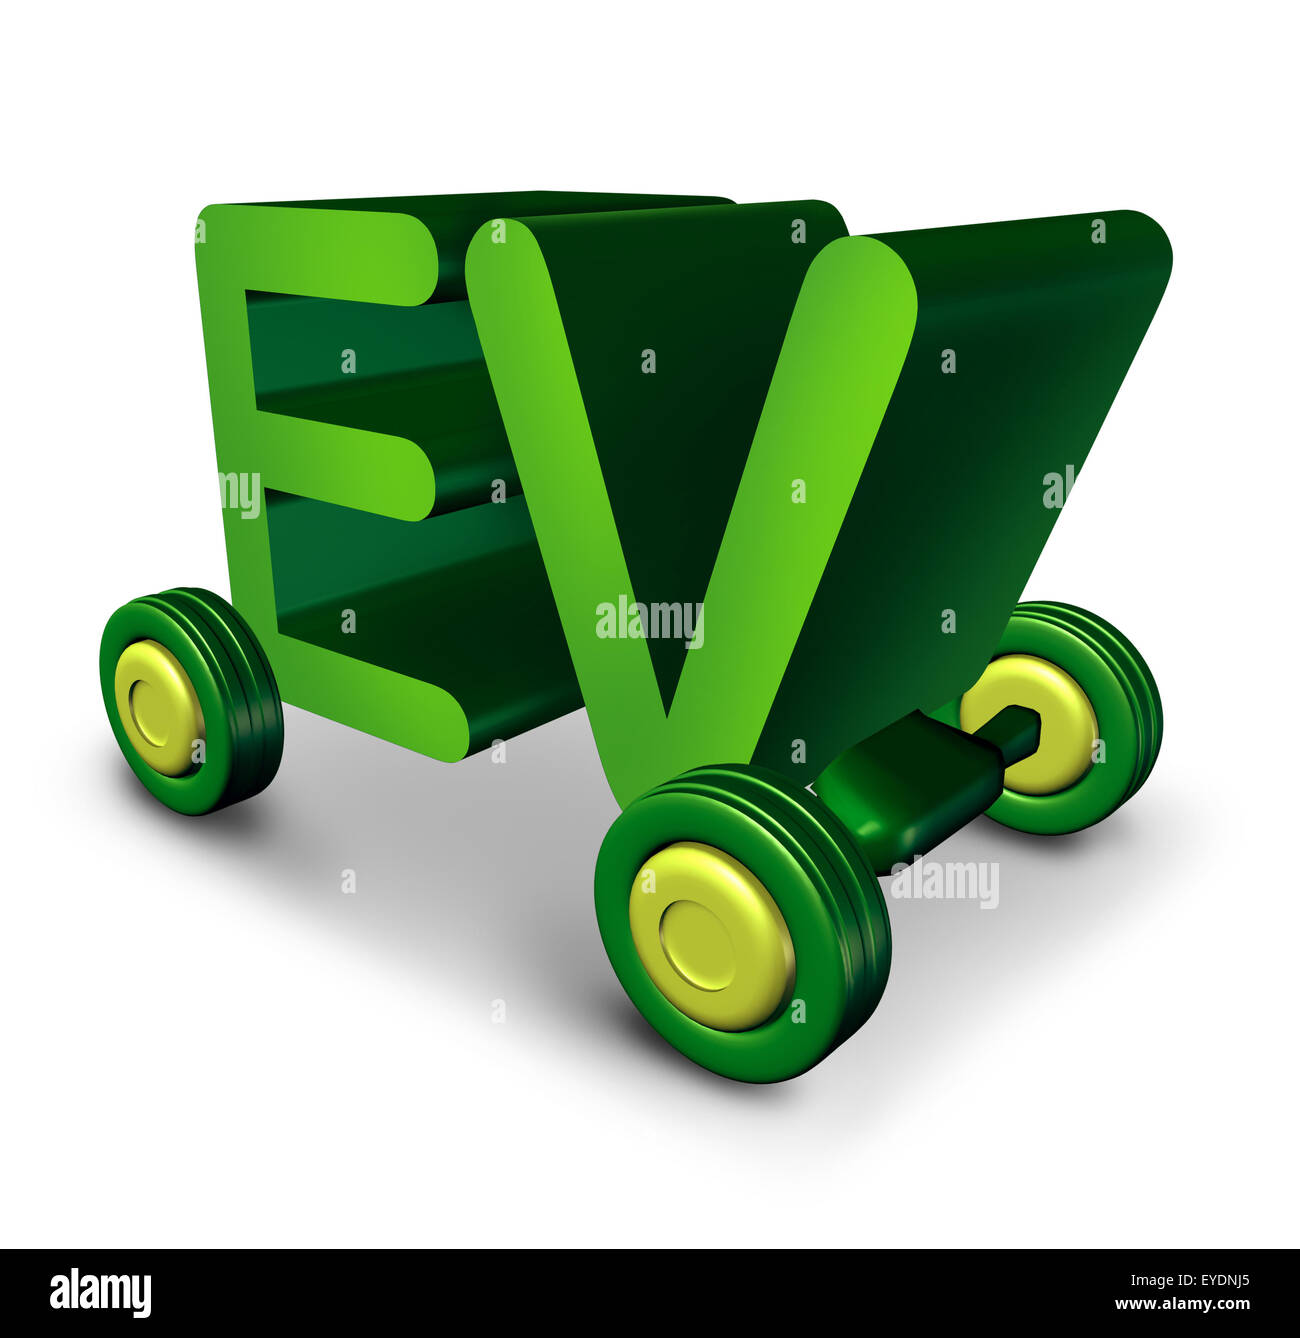 Concetto di veicolo elettrico e EV simbolo come lettere di colore verde su ruote come icona per l'elettricità alimentato automatico e il futuro dell'ambiente alimentato a batteria per il trasporto e a zero emissioni automobile. Foto Stock